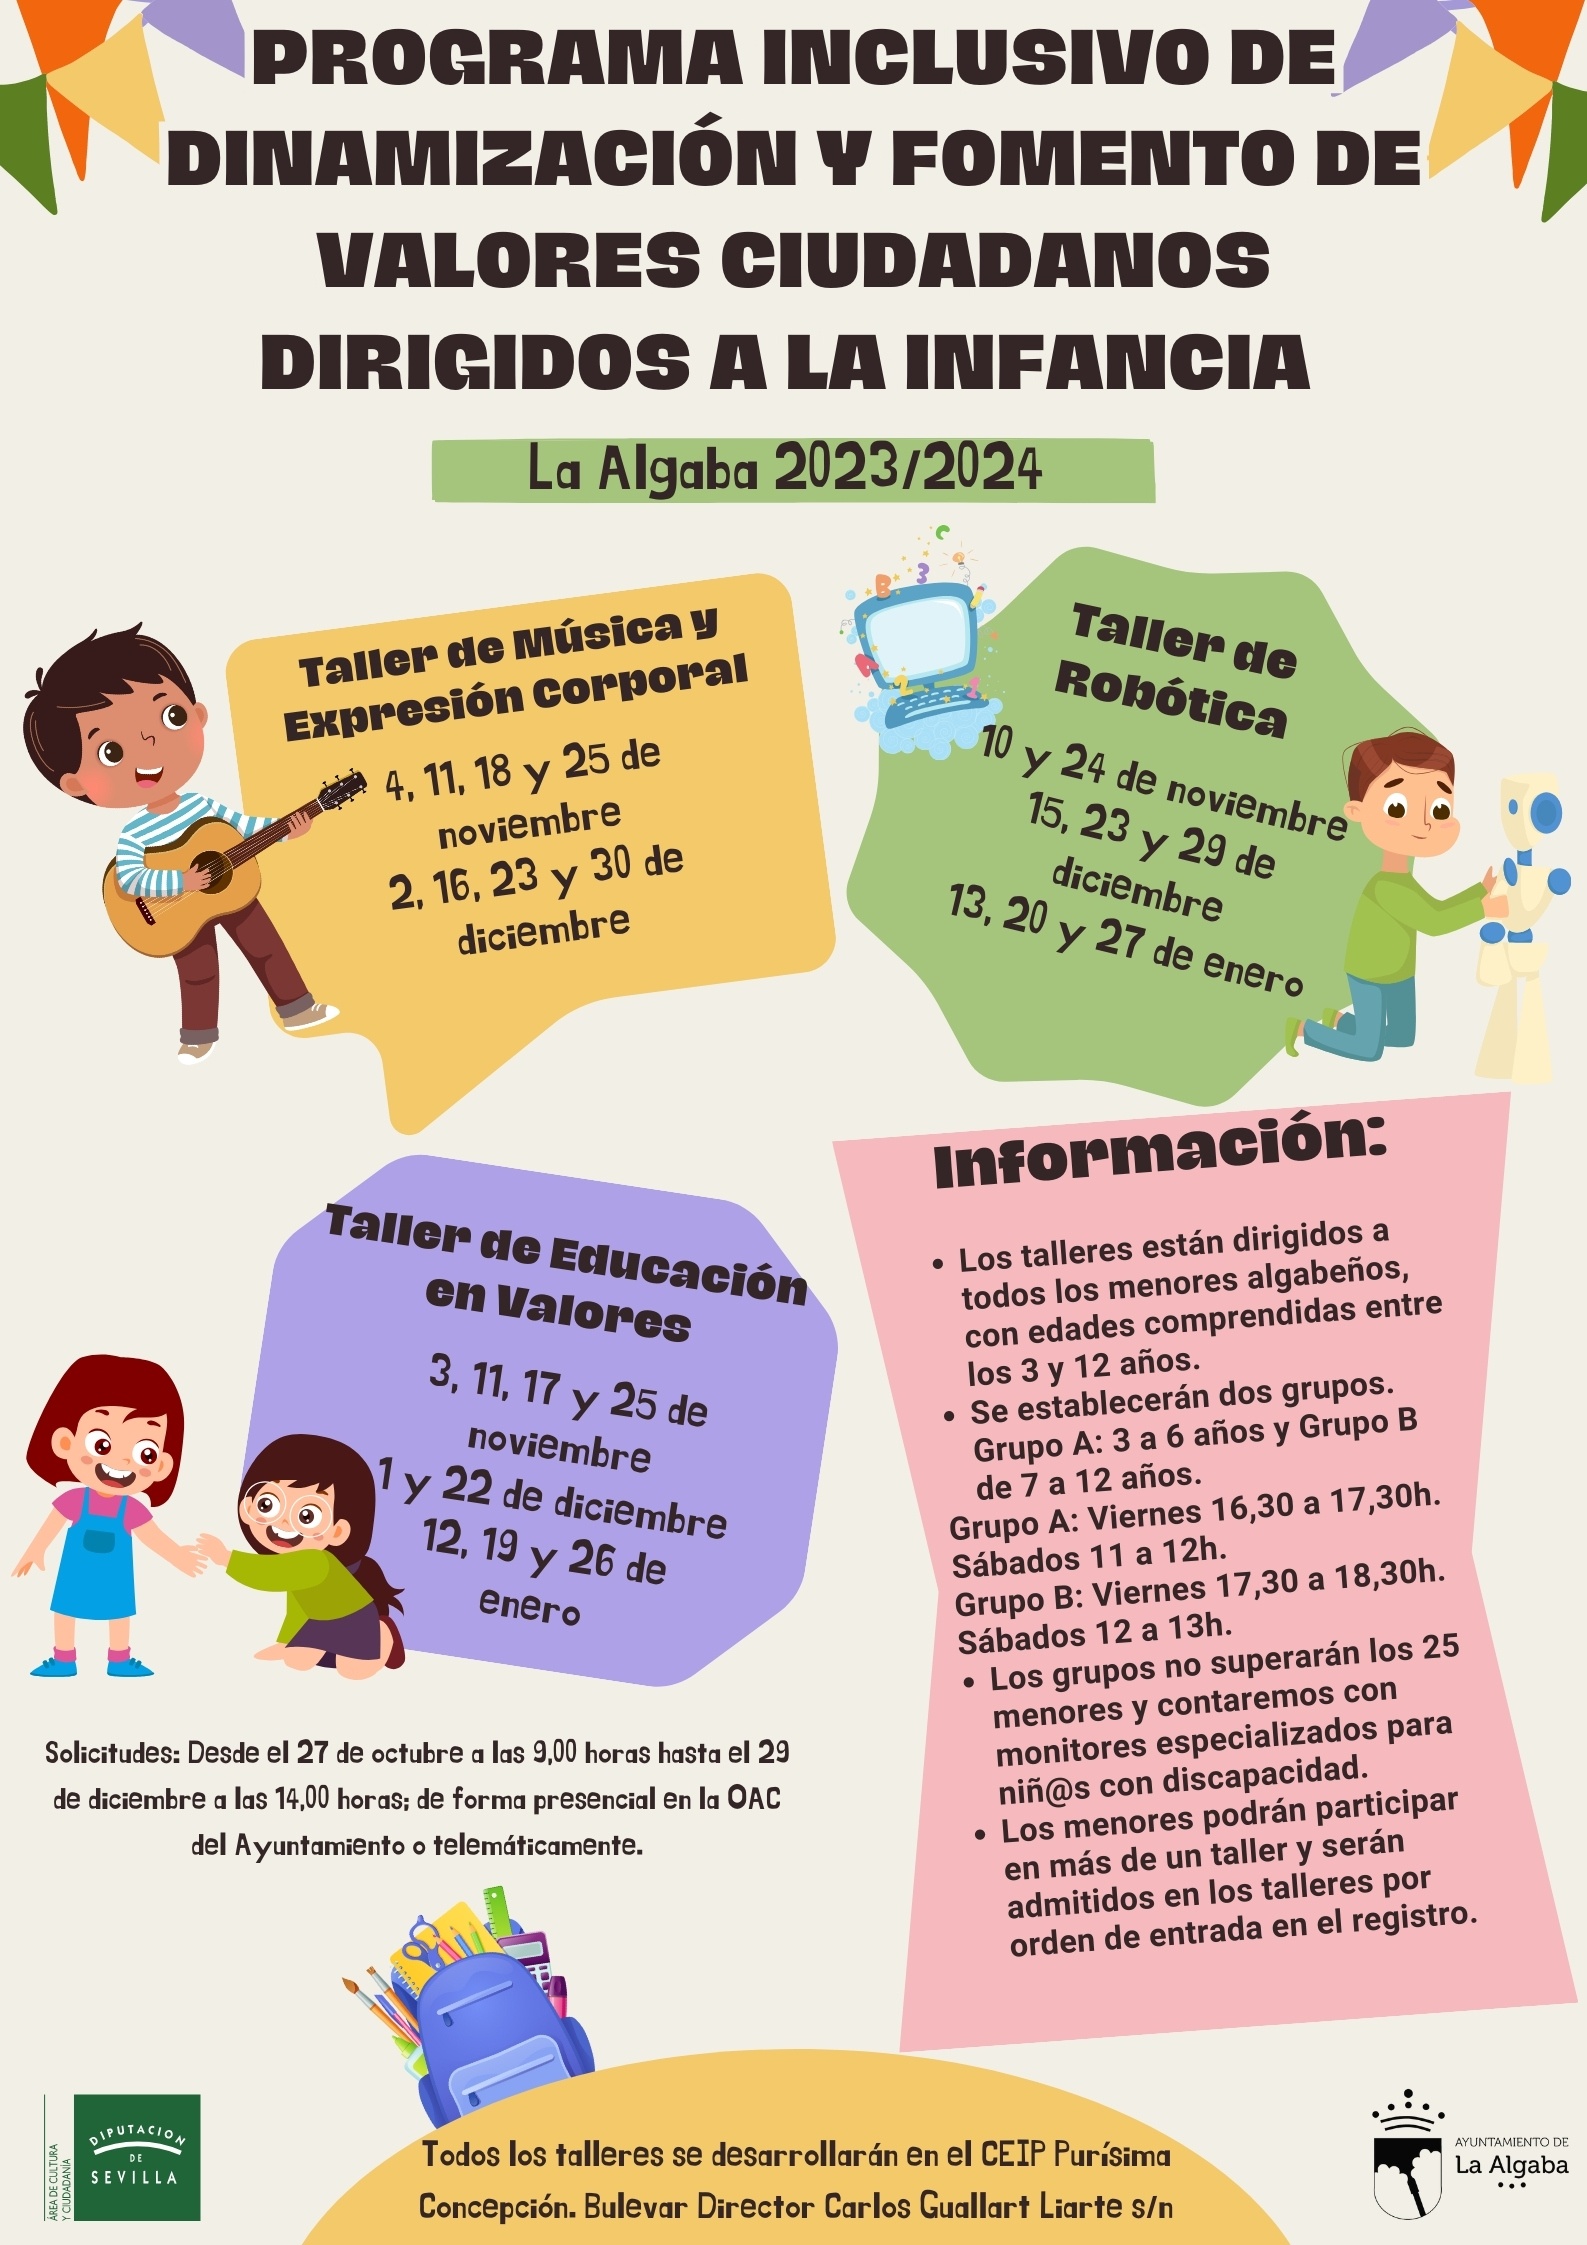 PROGRAMA DE DINAMIZACIÓN Y FOMENTO DE VALORES CIUDADANOS DIRIGIDOS A LA INFANCIA (PDI)